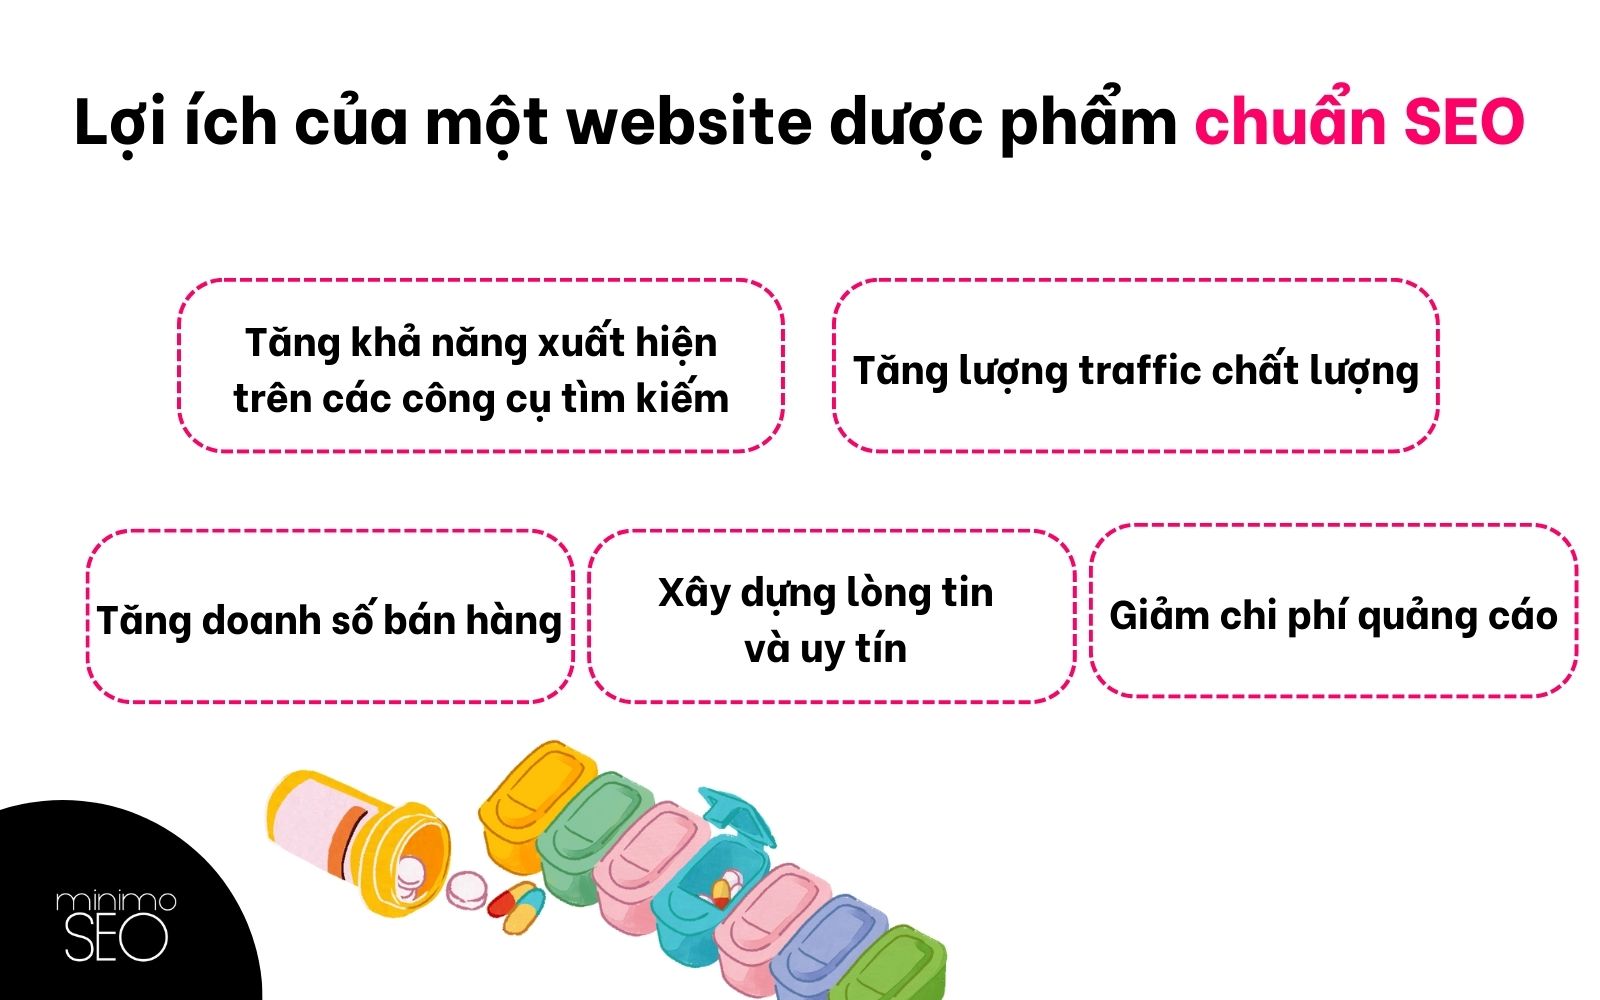 loi-ich-cua-website-chuan-seo